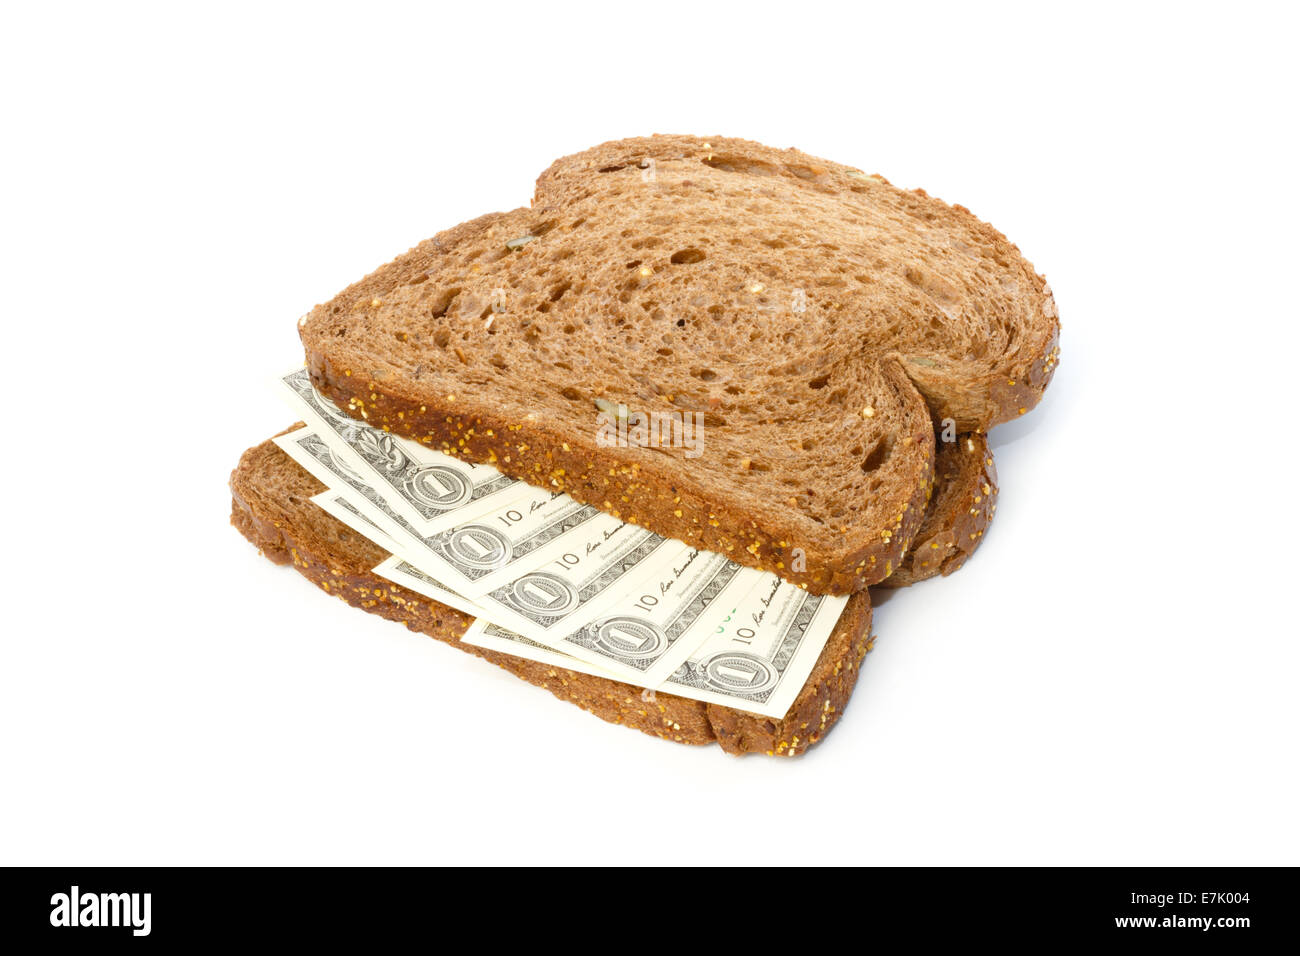 Due fette di pane marrone con noi le fatture del dollaro diffuso a sandwich Foto Stock